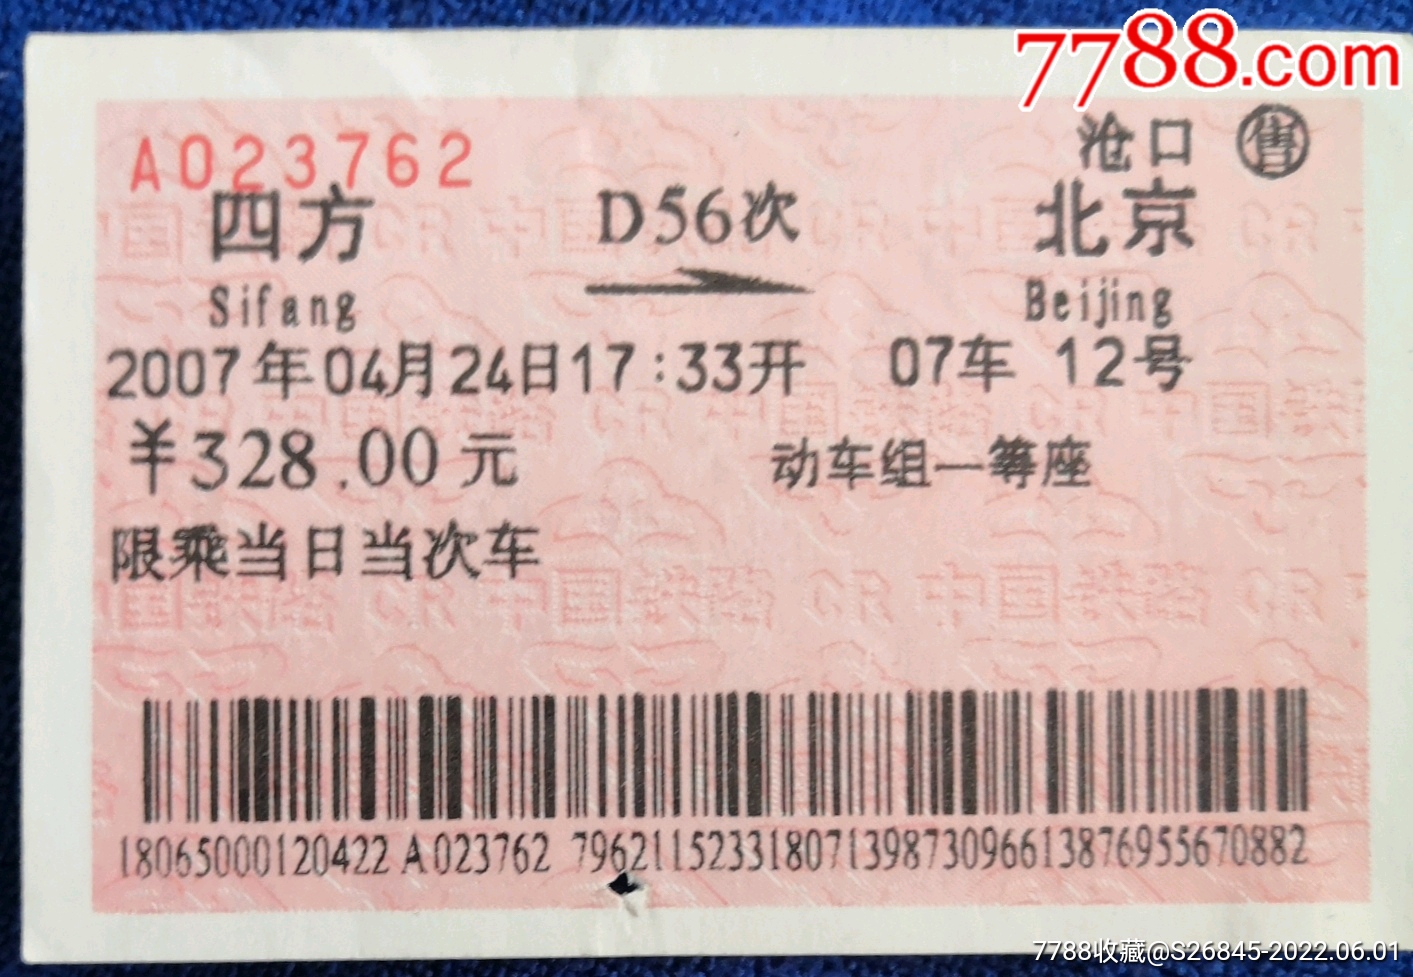 四方→北京d56次动车一等座